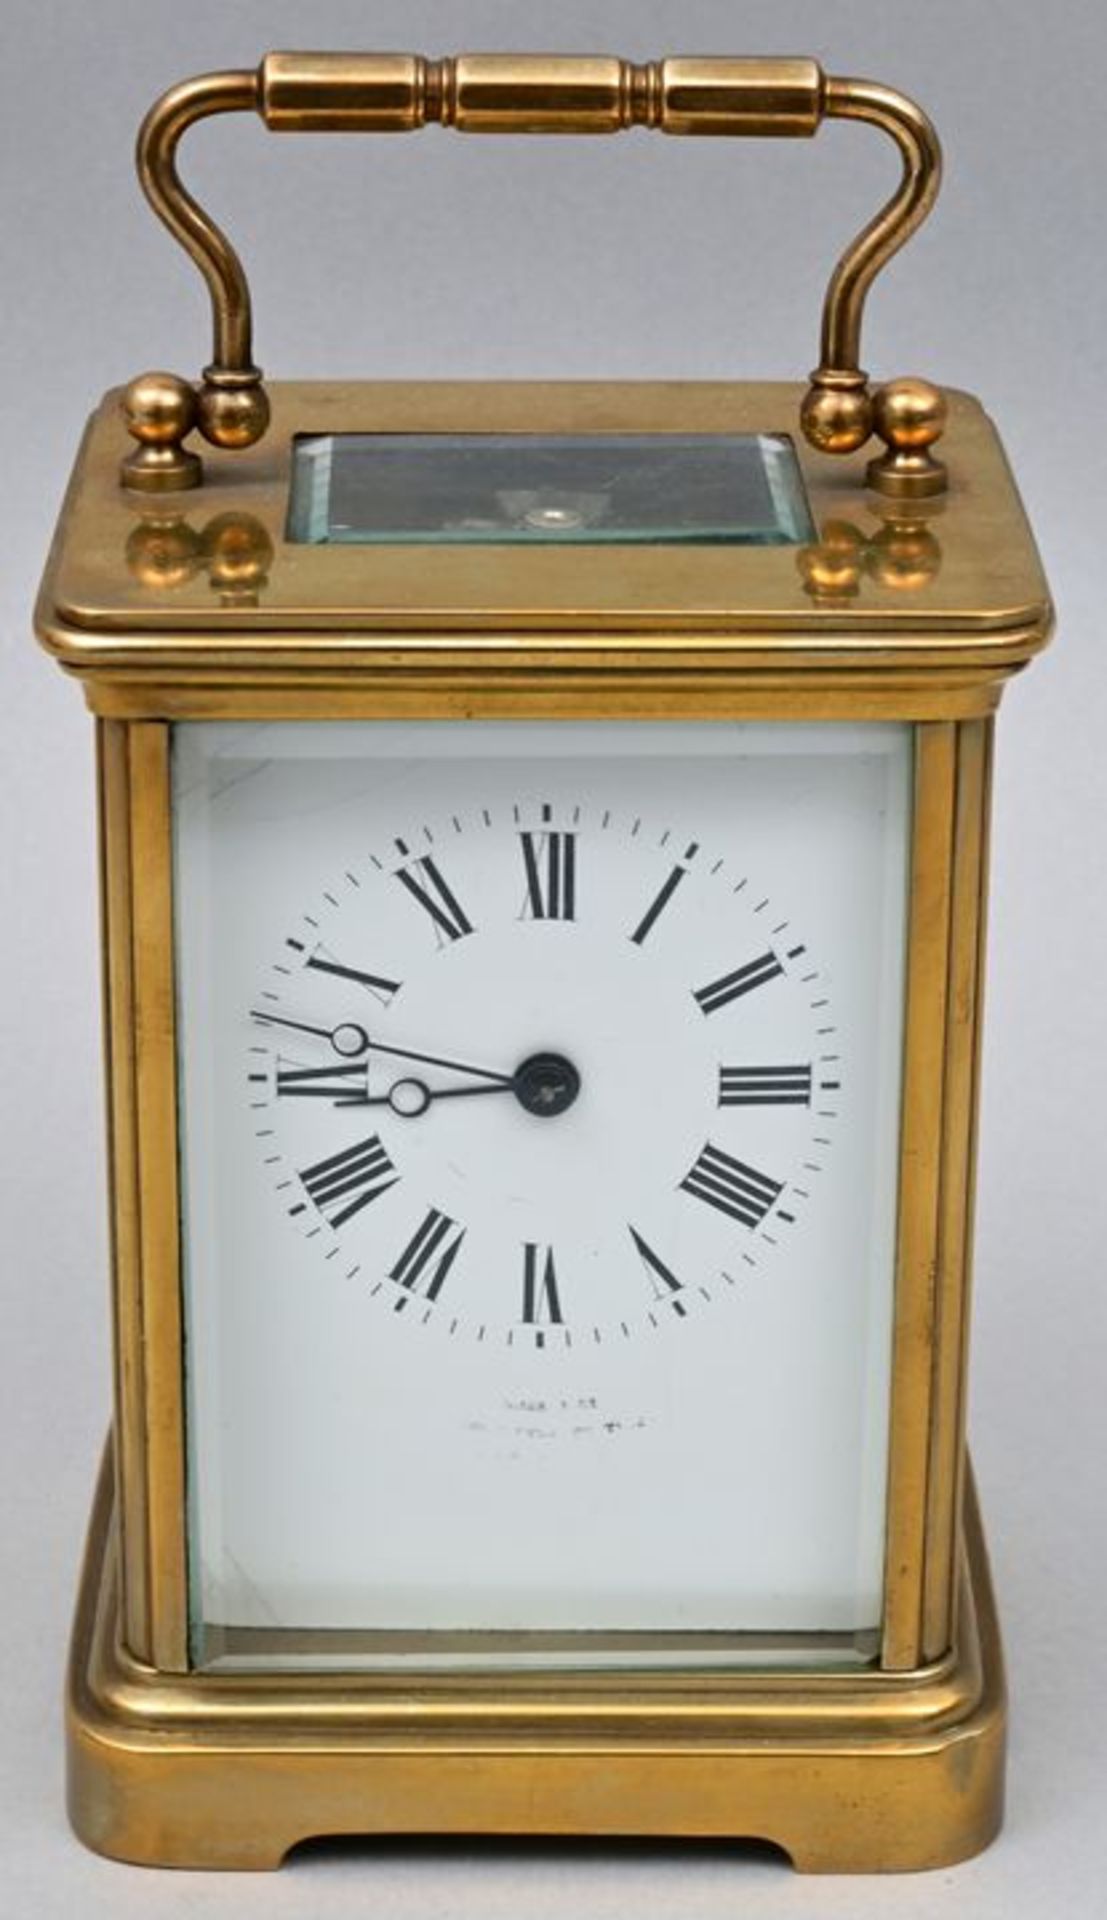 Reiseuhr m. Schlagwerk / Travel clock